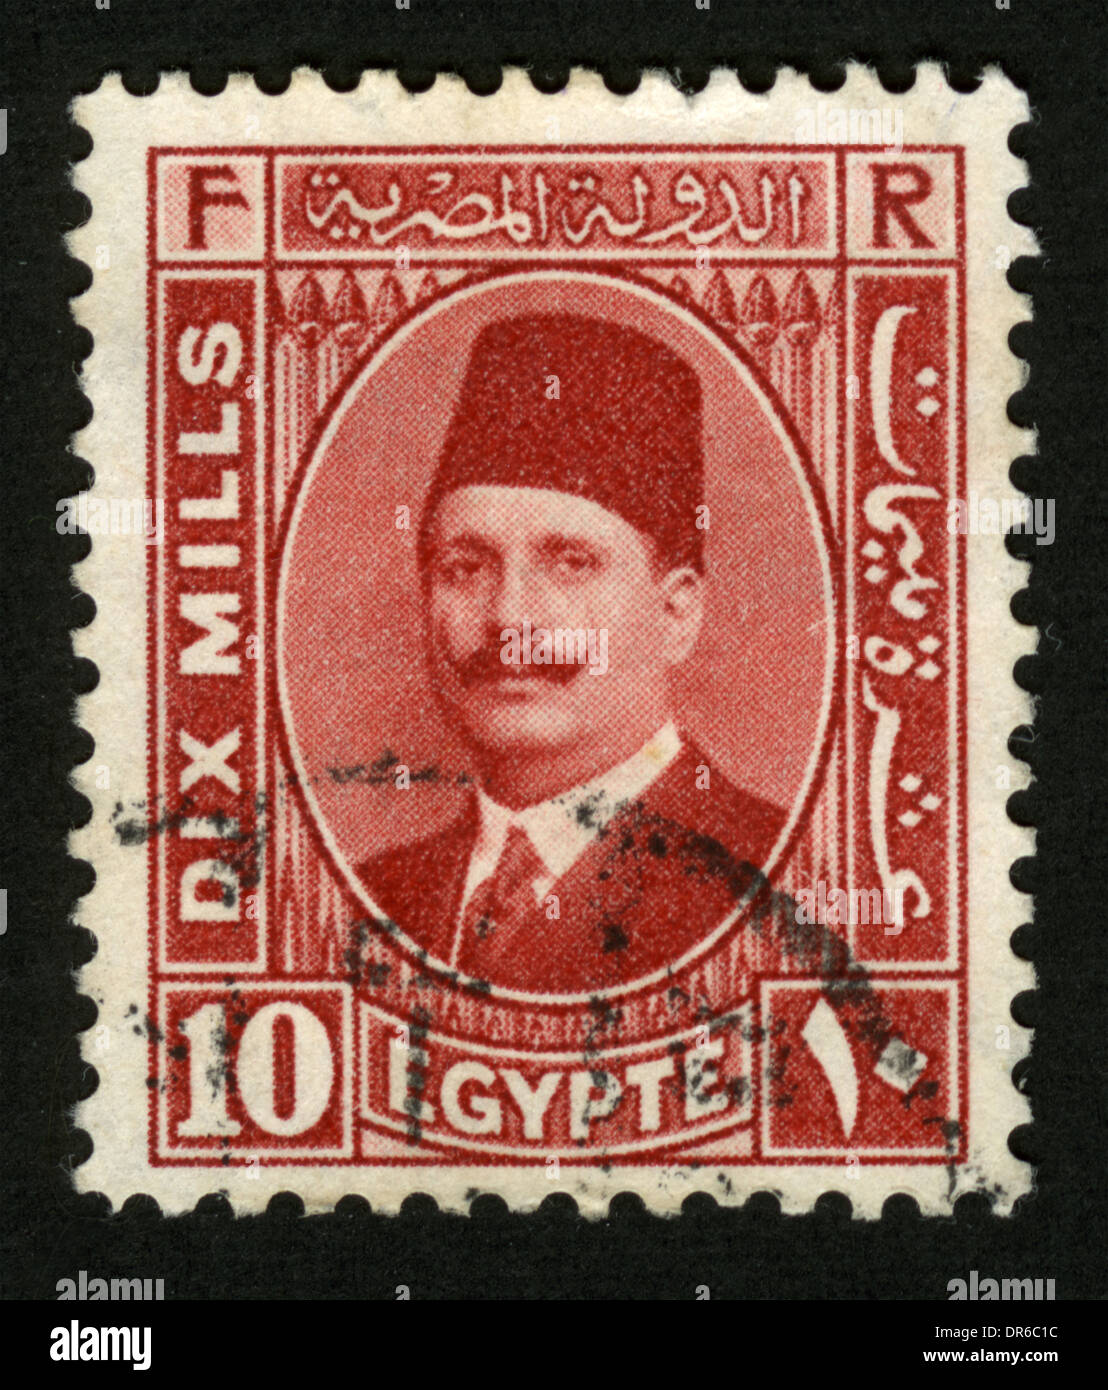 Egypt stamp immagini e fotografie stock ad alta risoluzione - Alamy